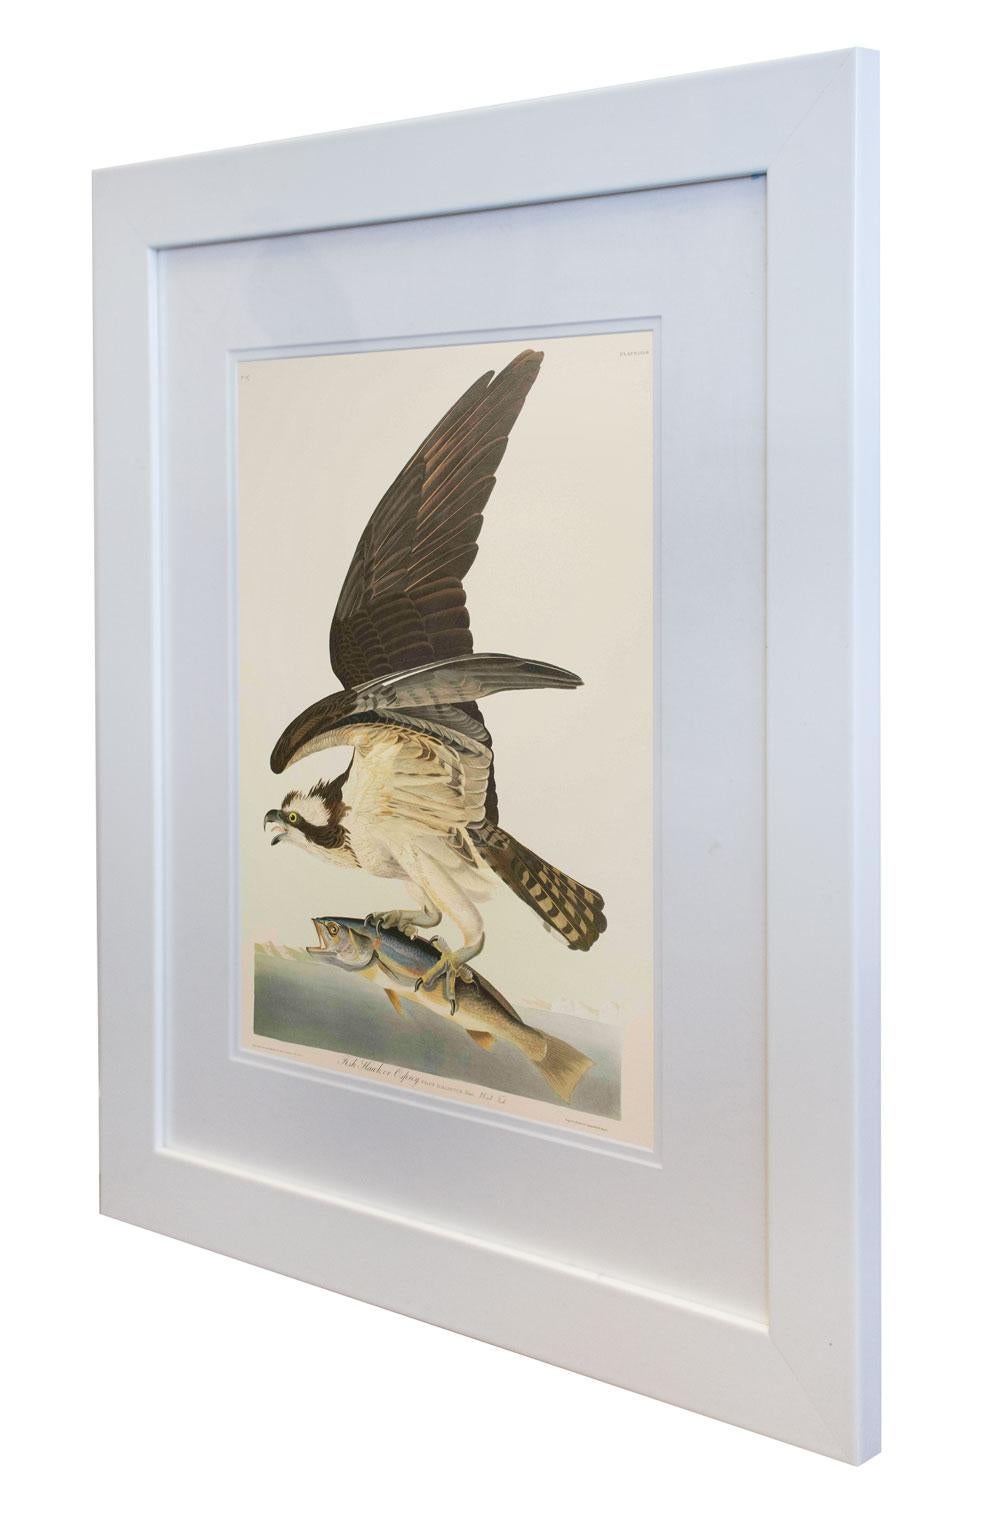 Fish Hawk, oder Osprey, Auflage Pl. 81 – Print von After John James Audubon